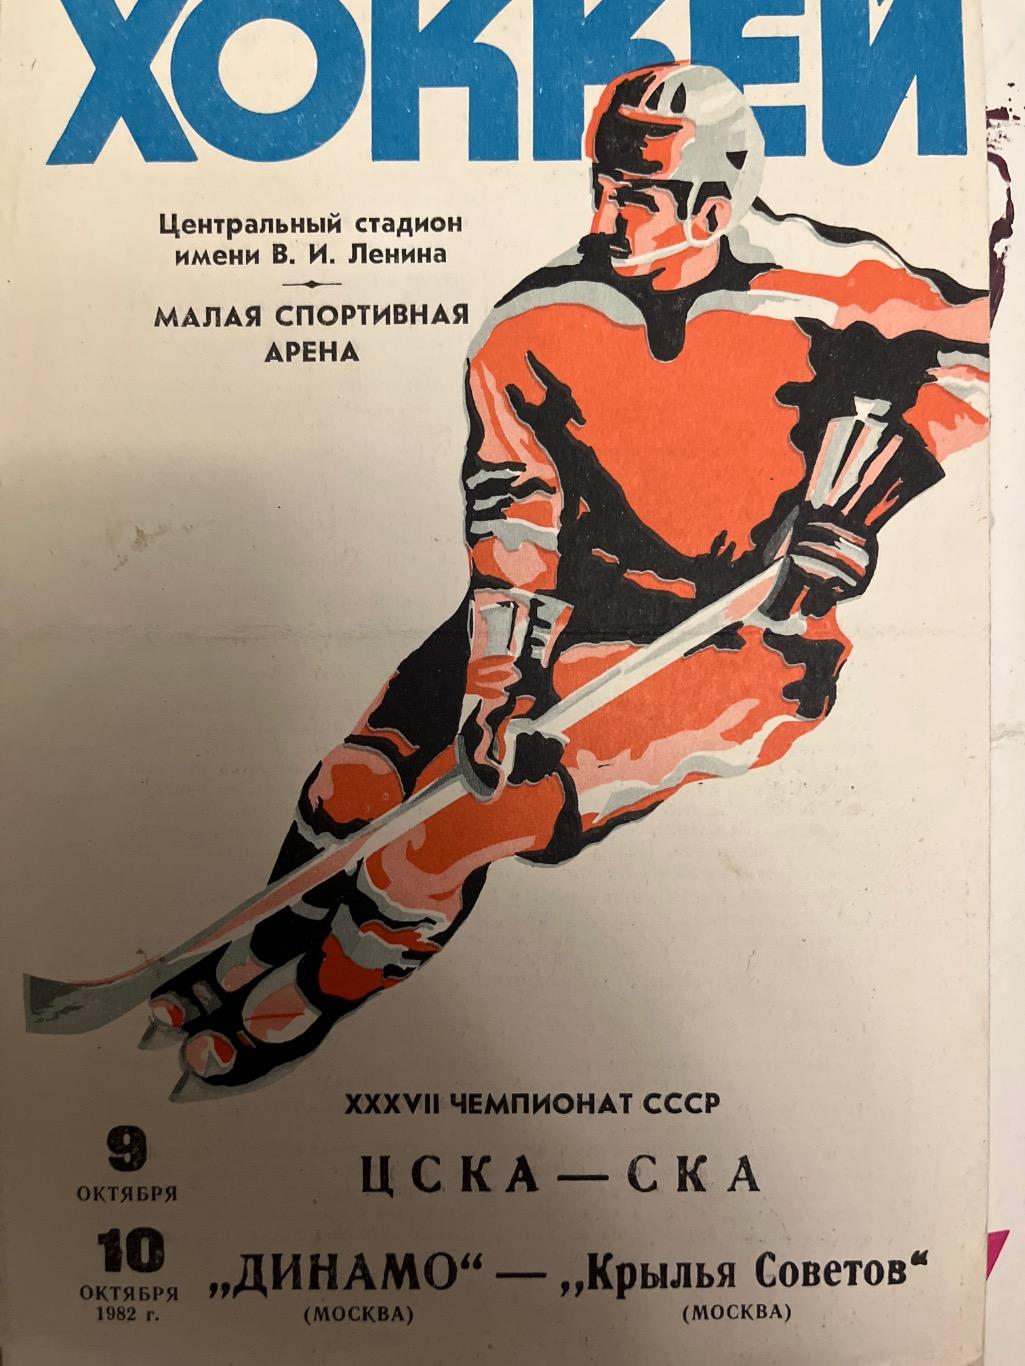 ЦСКА - СКА Ленинград / Динамо Москва - Крылья Советов 1982